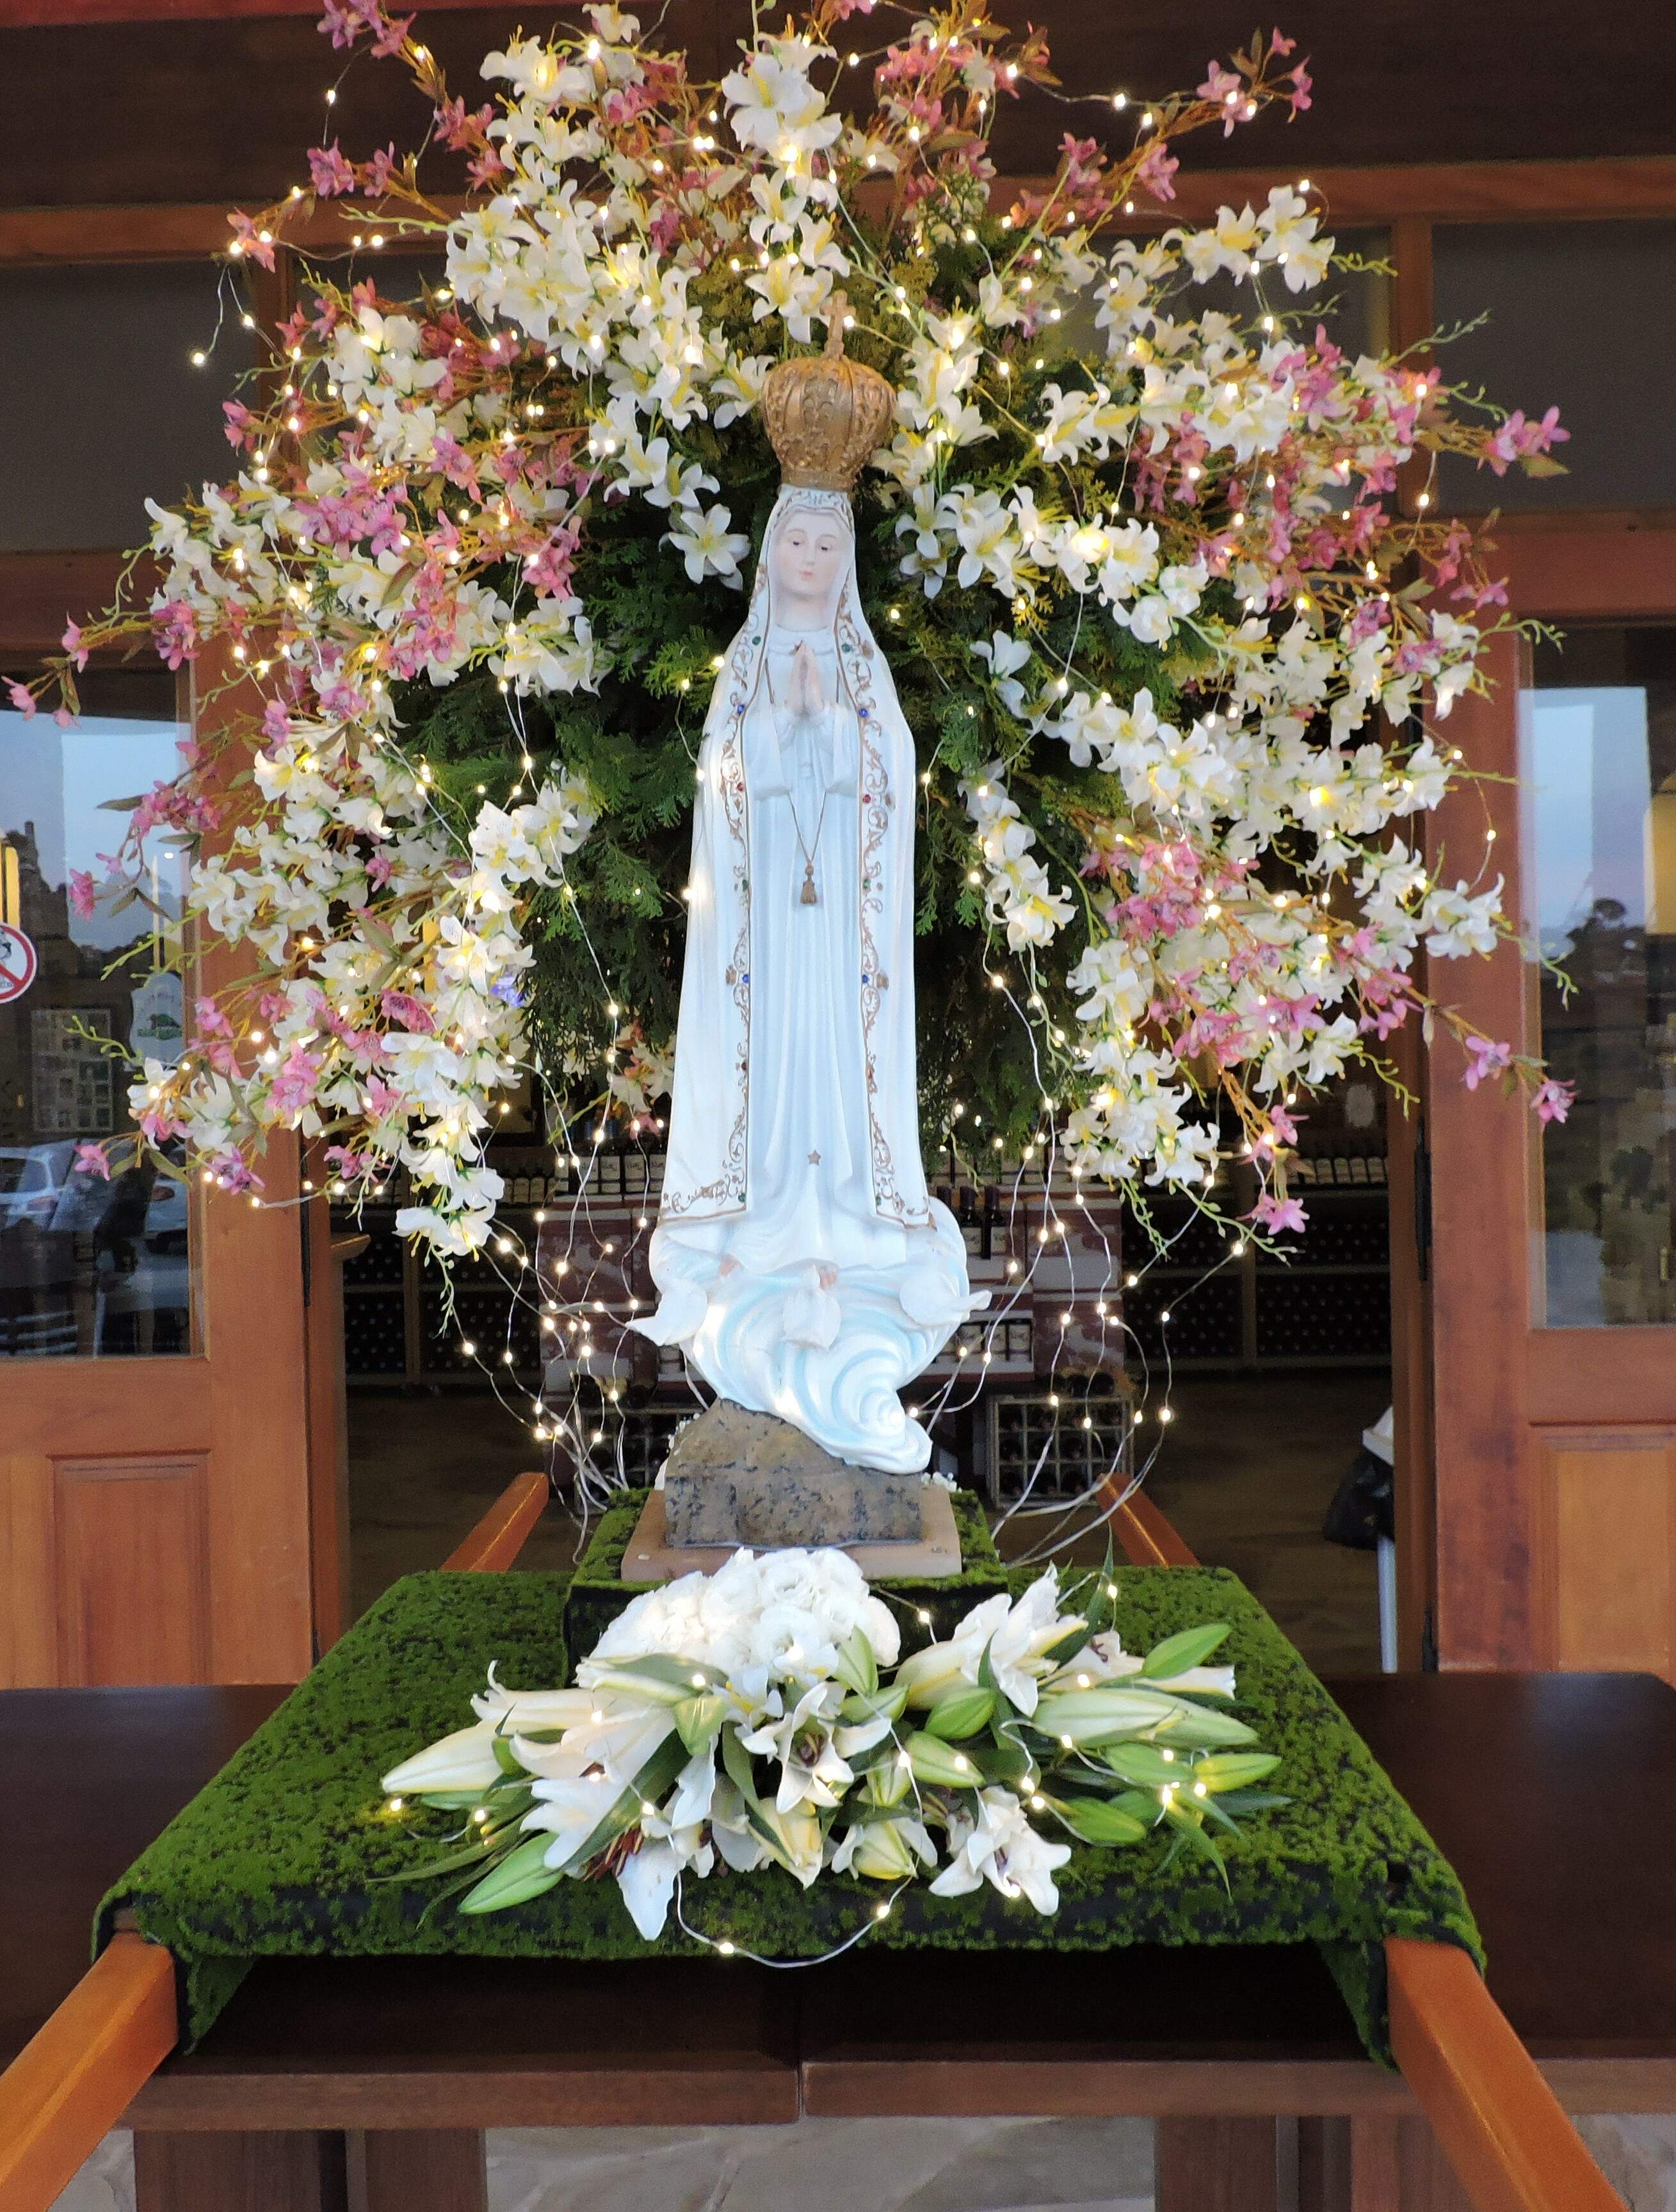 Turismo religioso ganha novo local de devoção a Nossa Senhora de Fátima no interior de São Paulo.